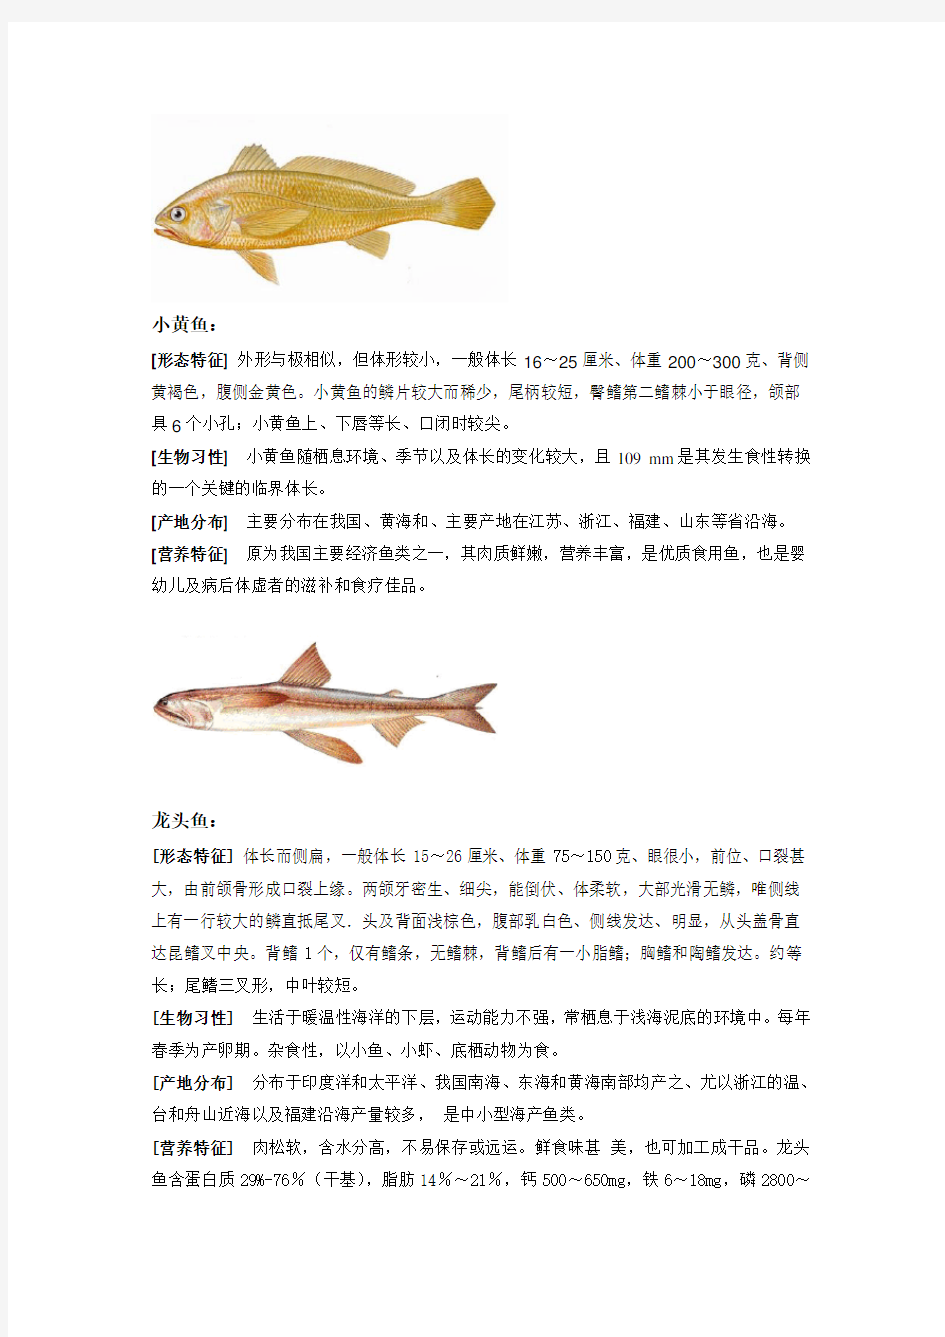 各种海鲜鱼类的介绍